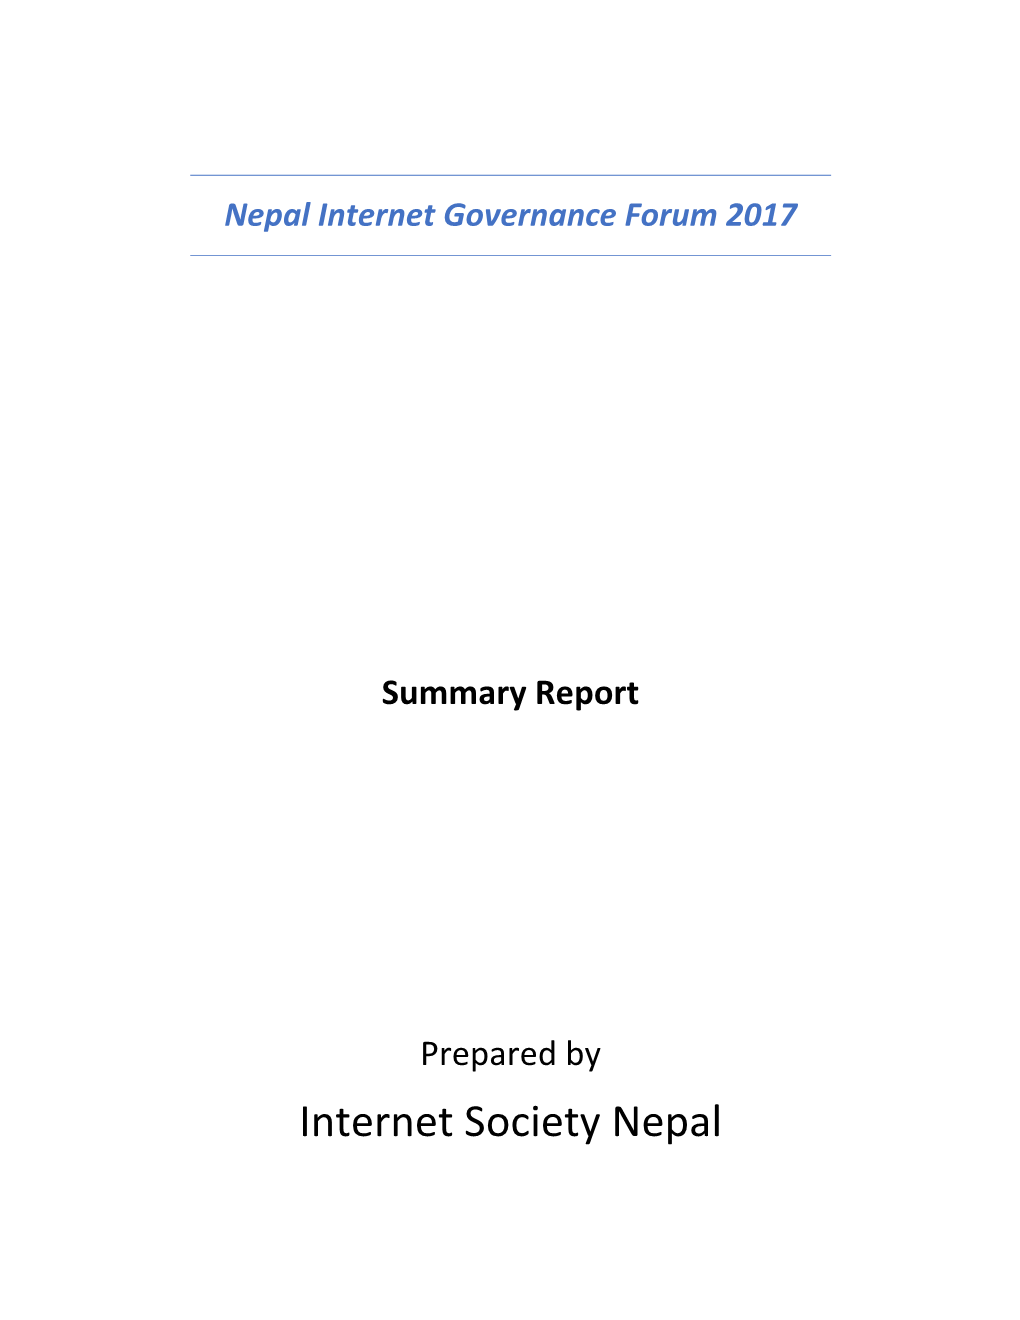 Internet Society Nepal